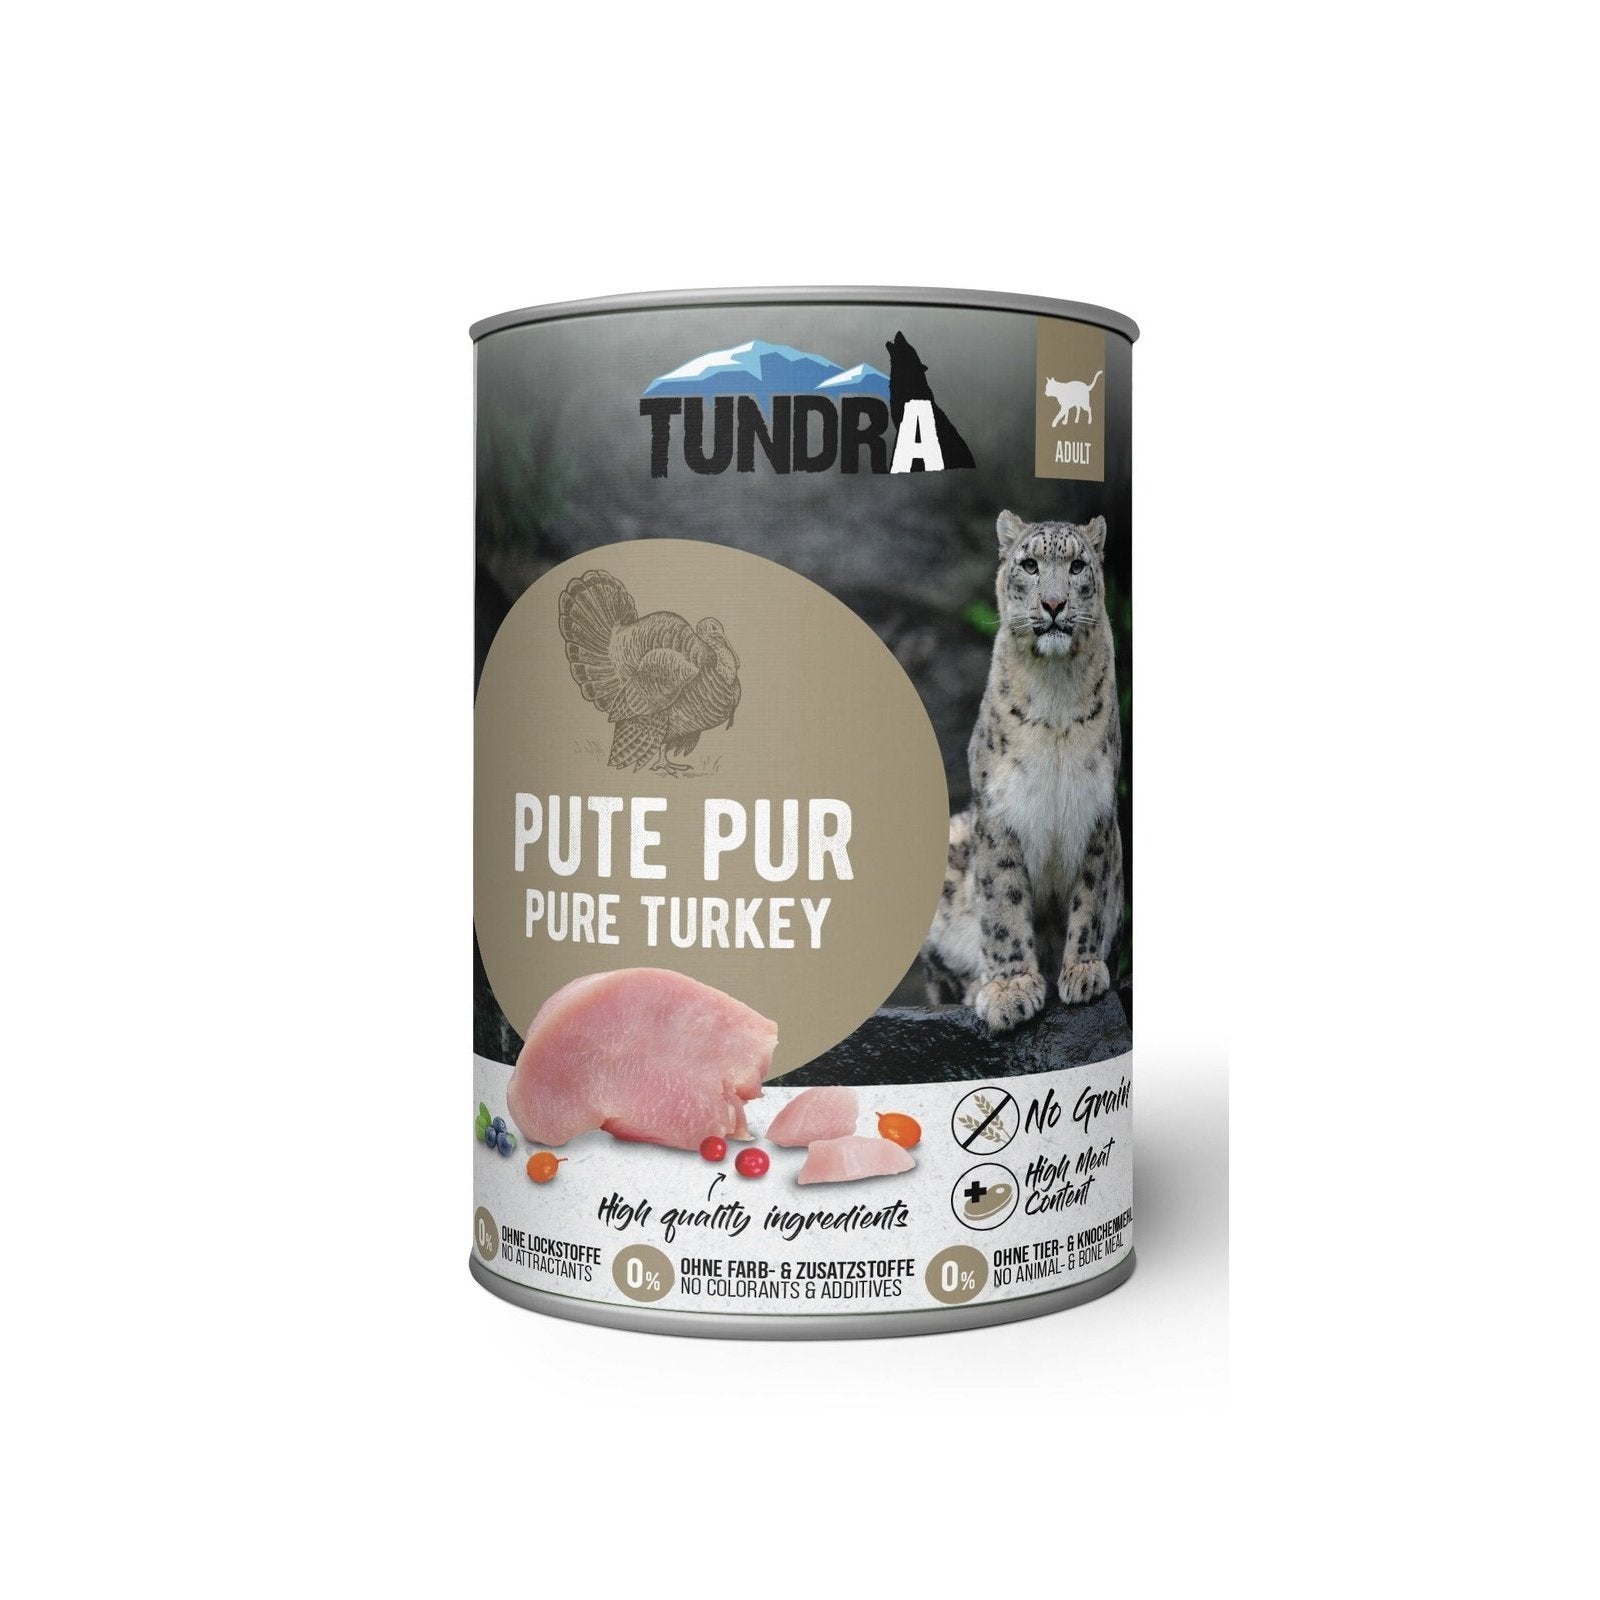 Artikel mit dem Namen Tundra Katze Pute Pur Dose im Shop von zoo.de , dem Onlineshop für nachhaltiges Hundefutter und Katzenfutter.